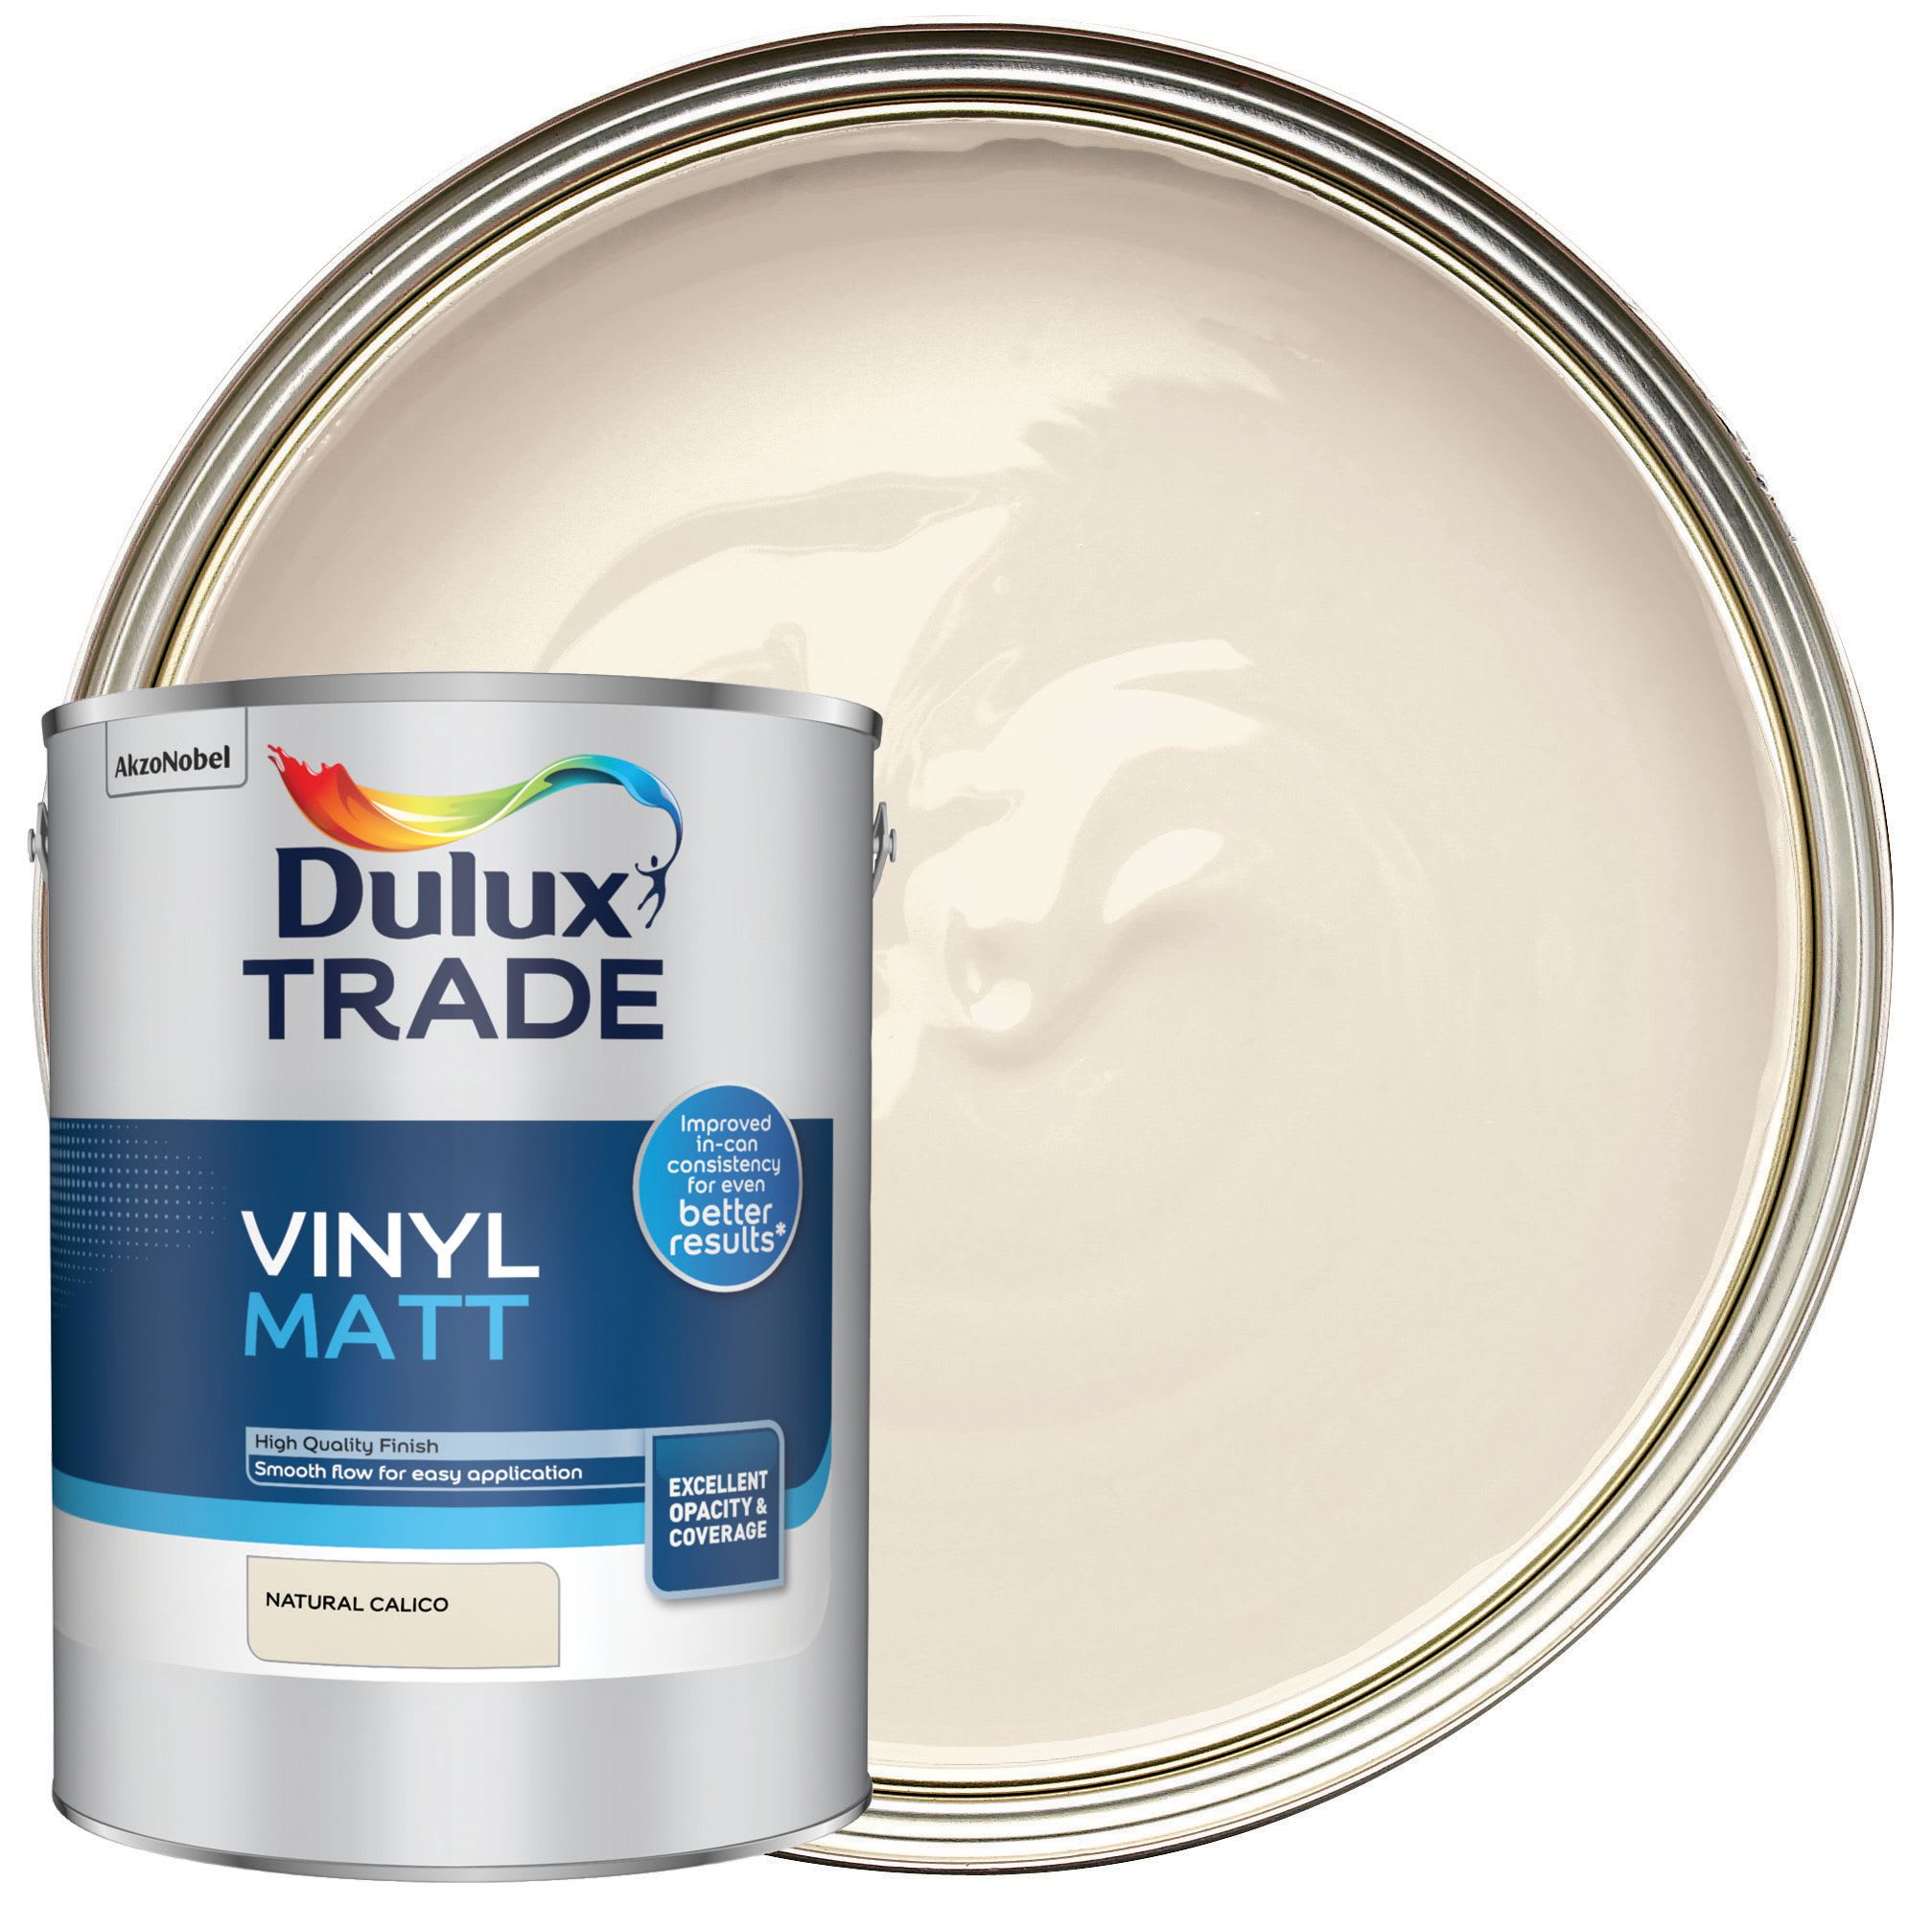 Dulux Trade Vinyl Matt Emulsion Paint - Natural